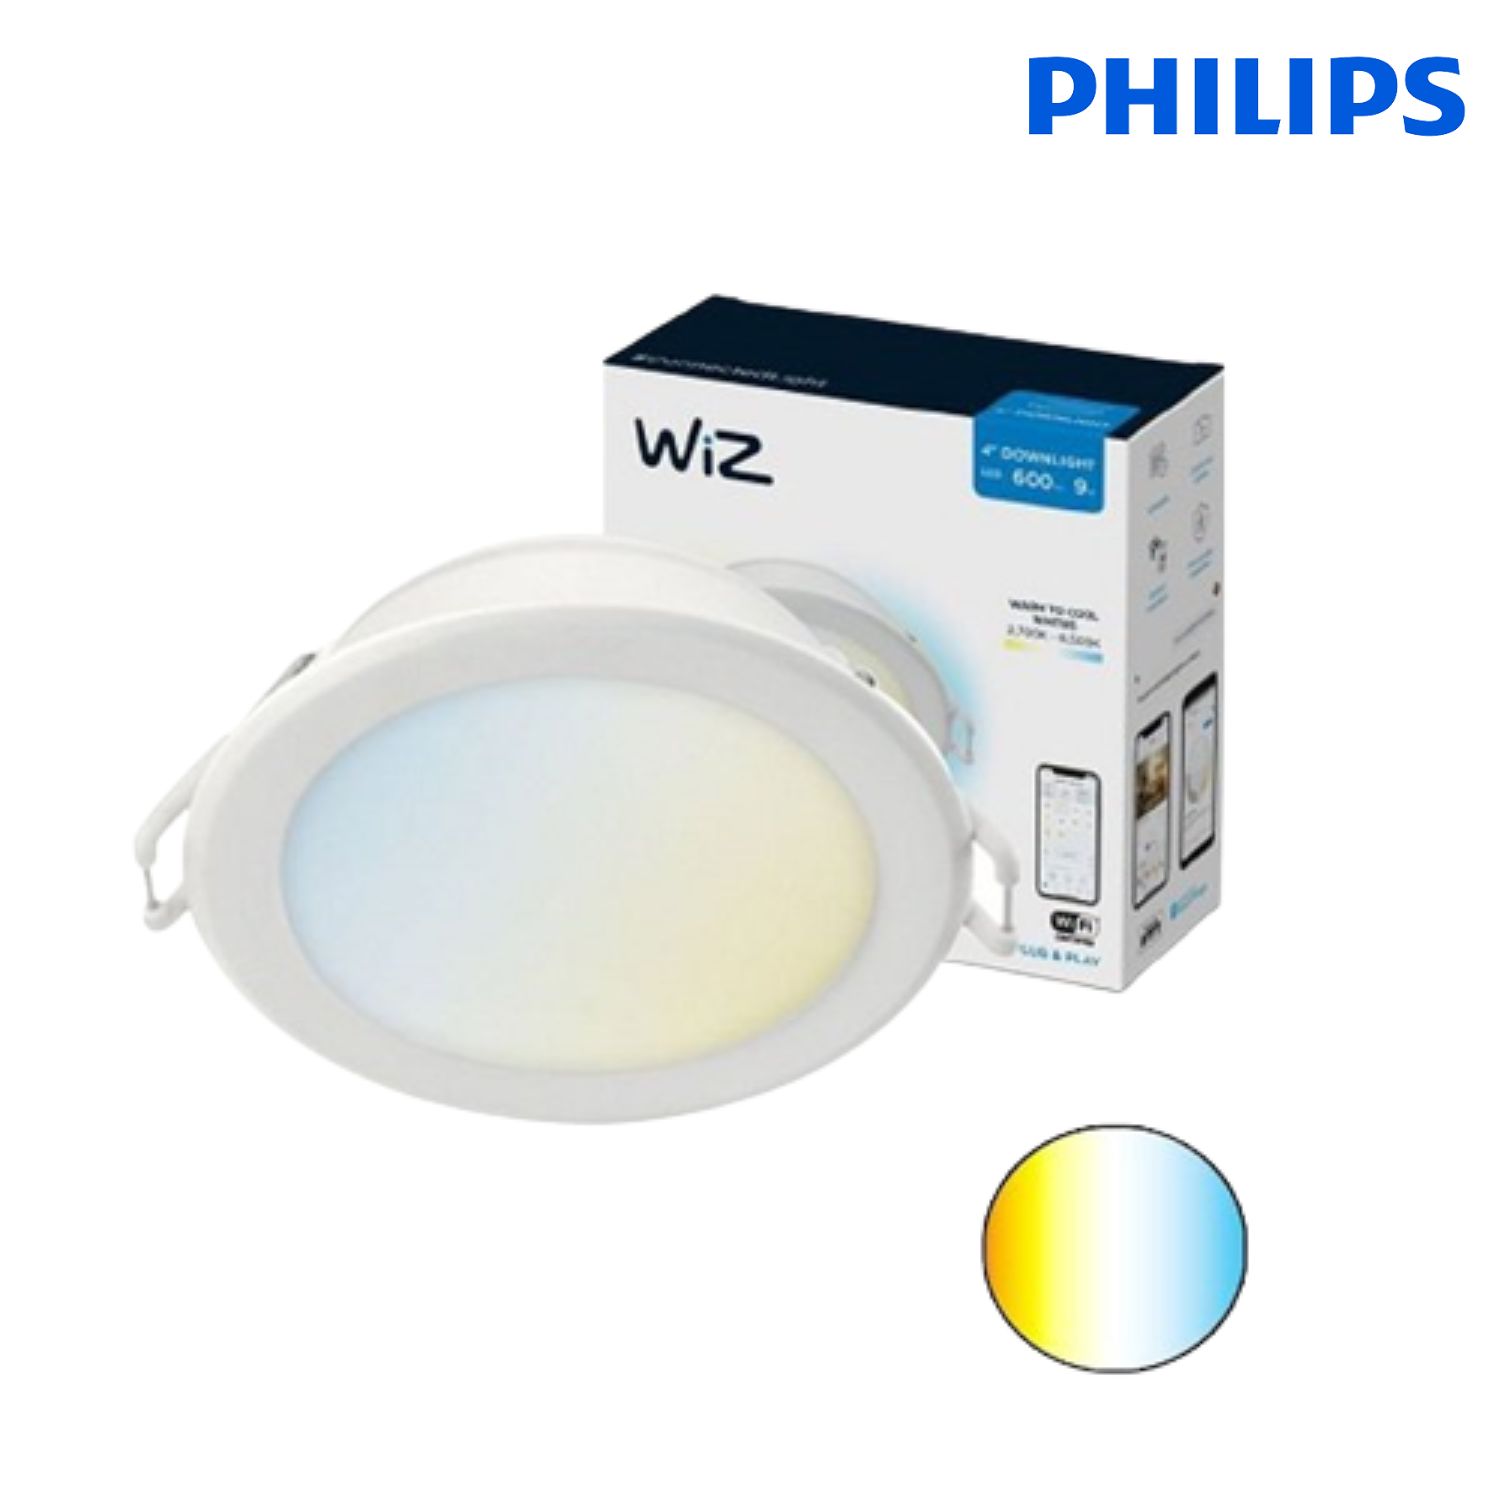 Đèn Âm Trần Philips Thông Minh WIZ -  Wifi thay đổi nhiệt độ màu 12.5W (Φ125)